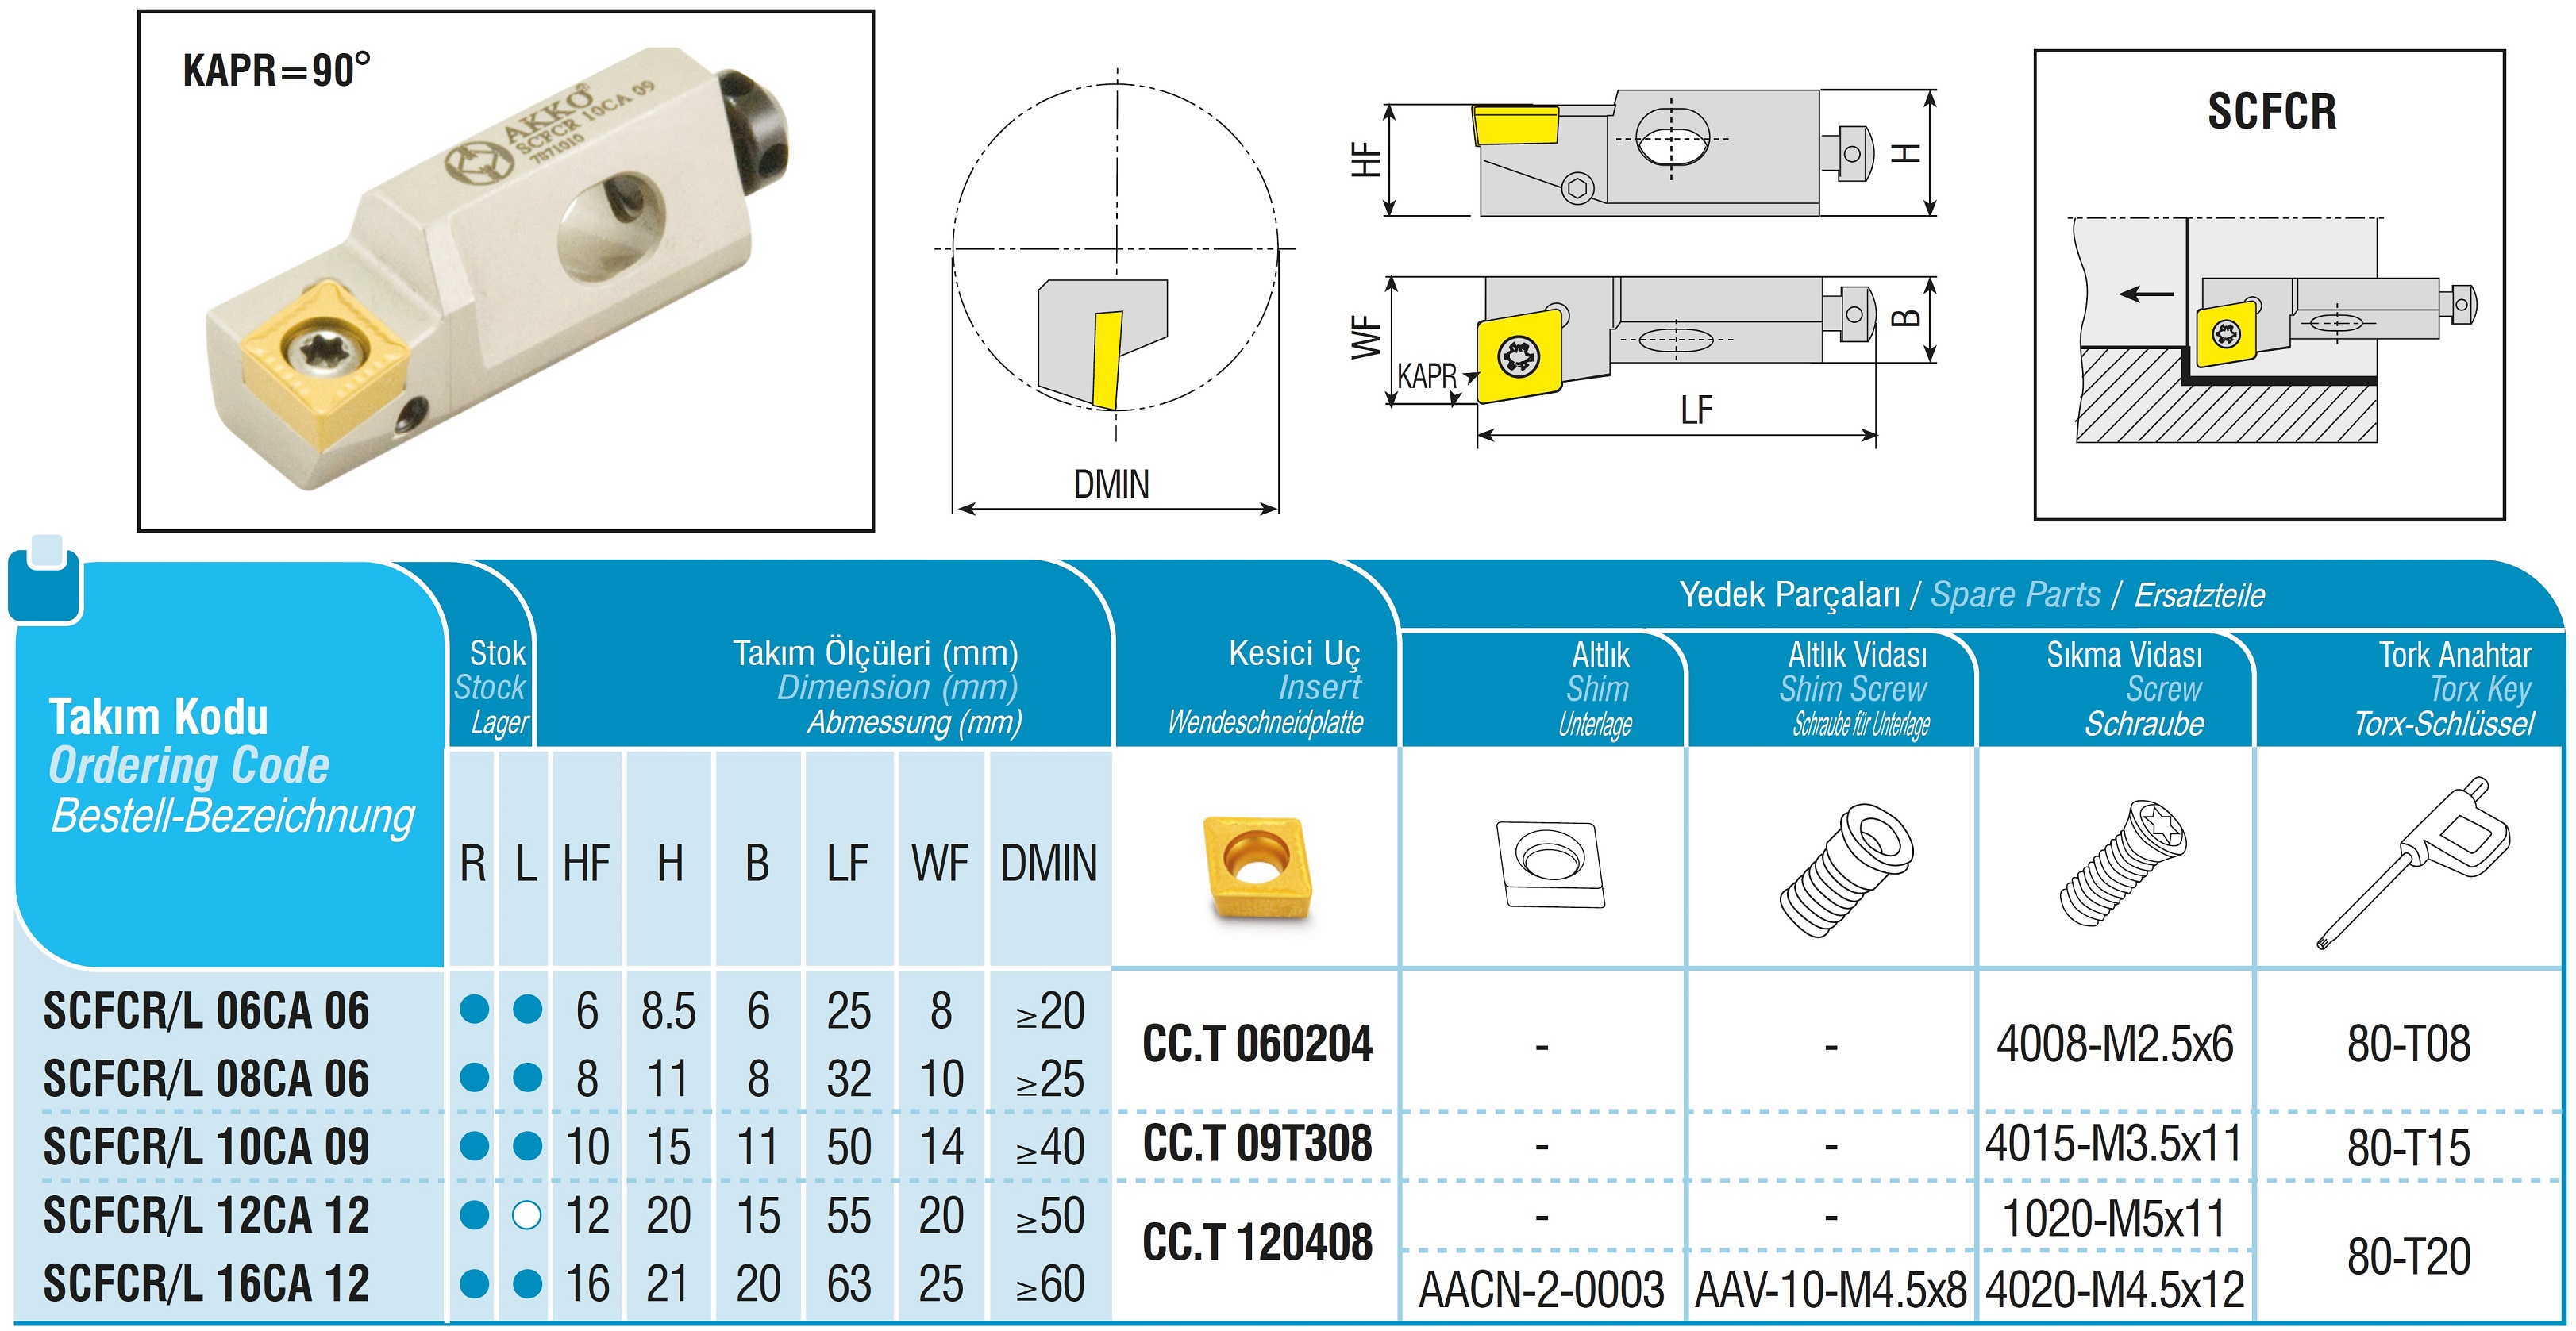 AKKO-Kurzdrehhalter für ISO-WSP CC.T 09T308
rechts, 90° Anstellwinkel